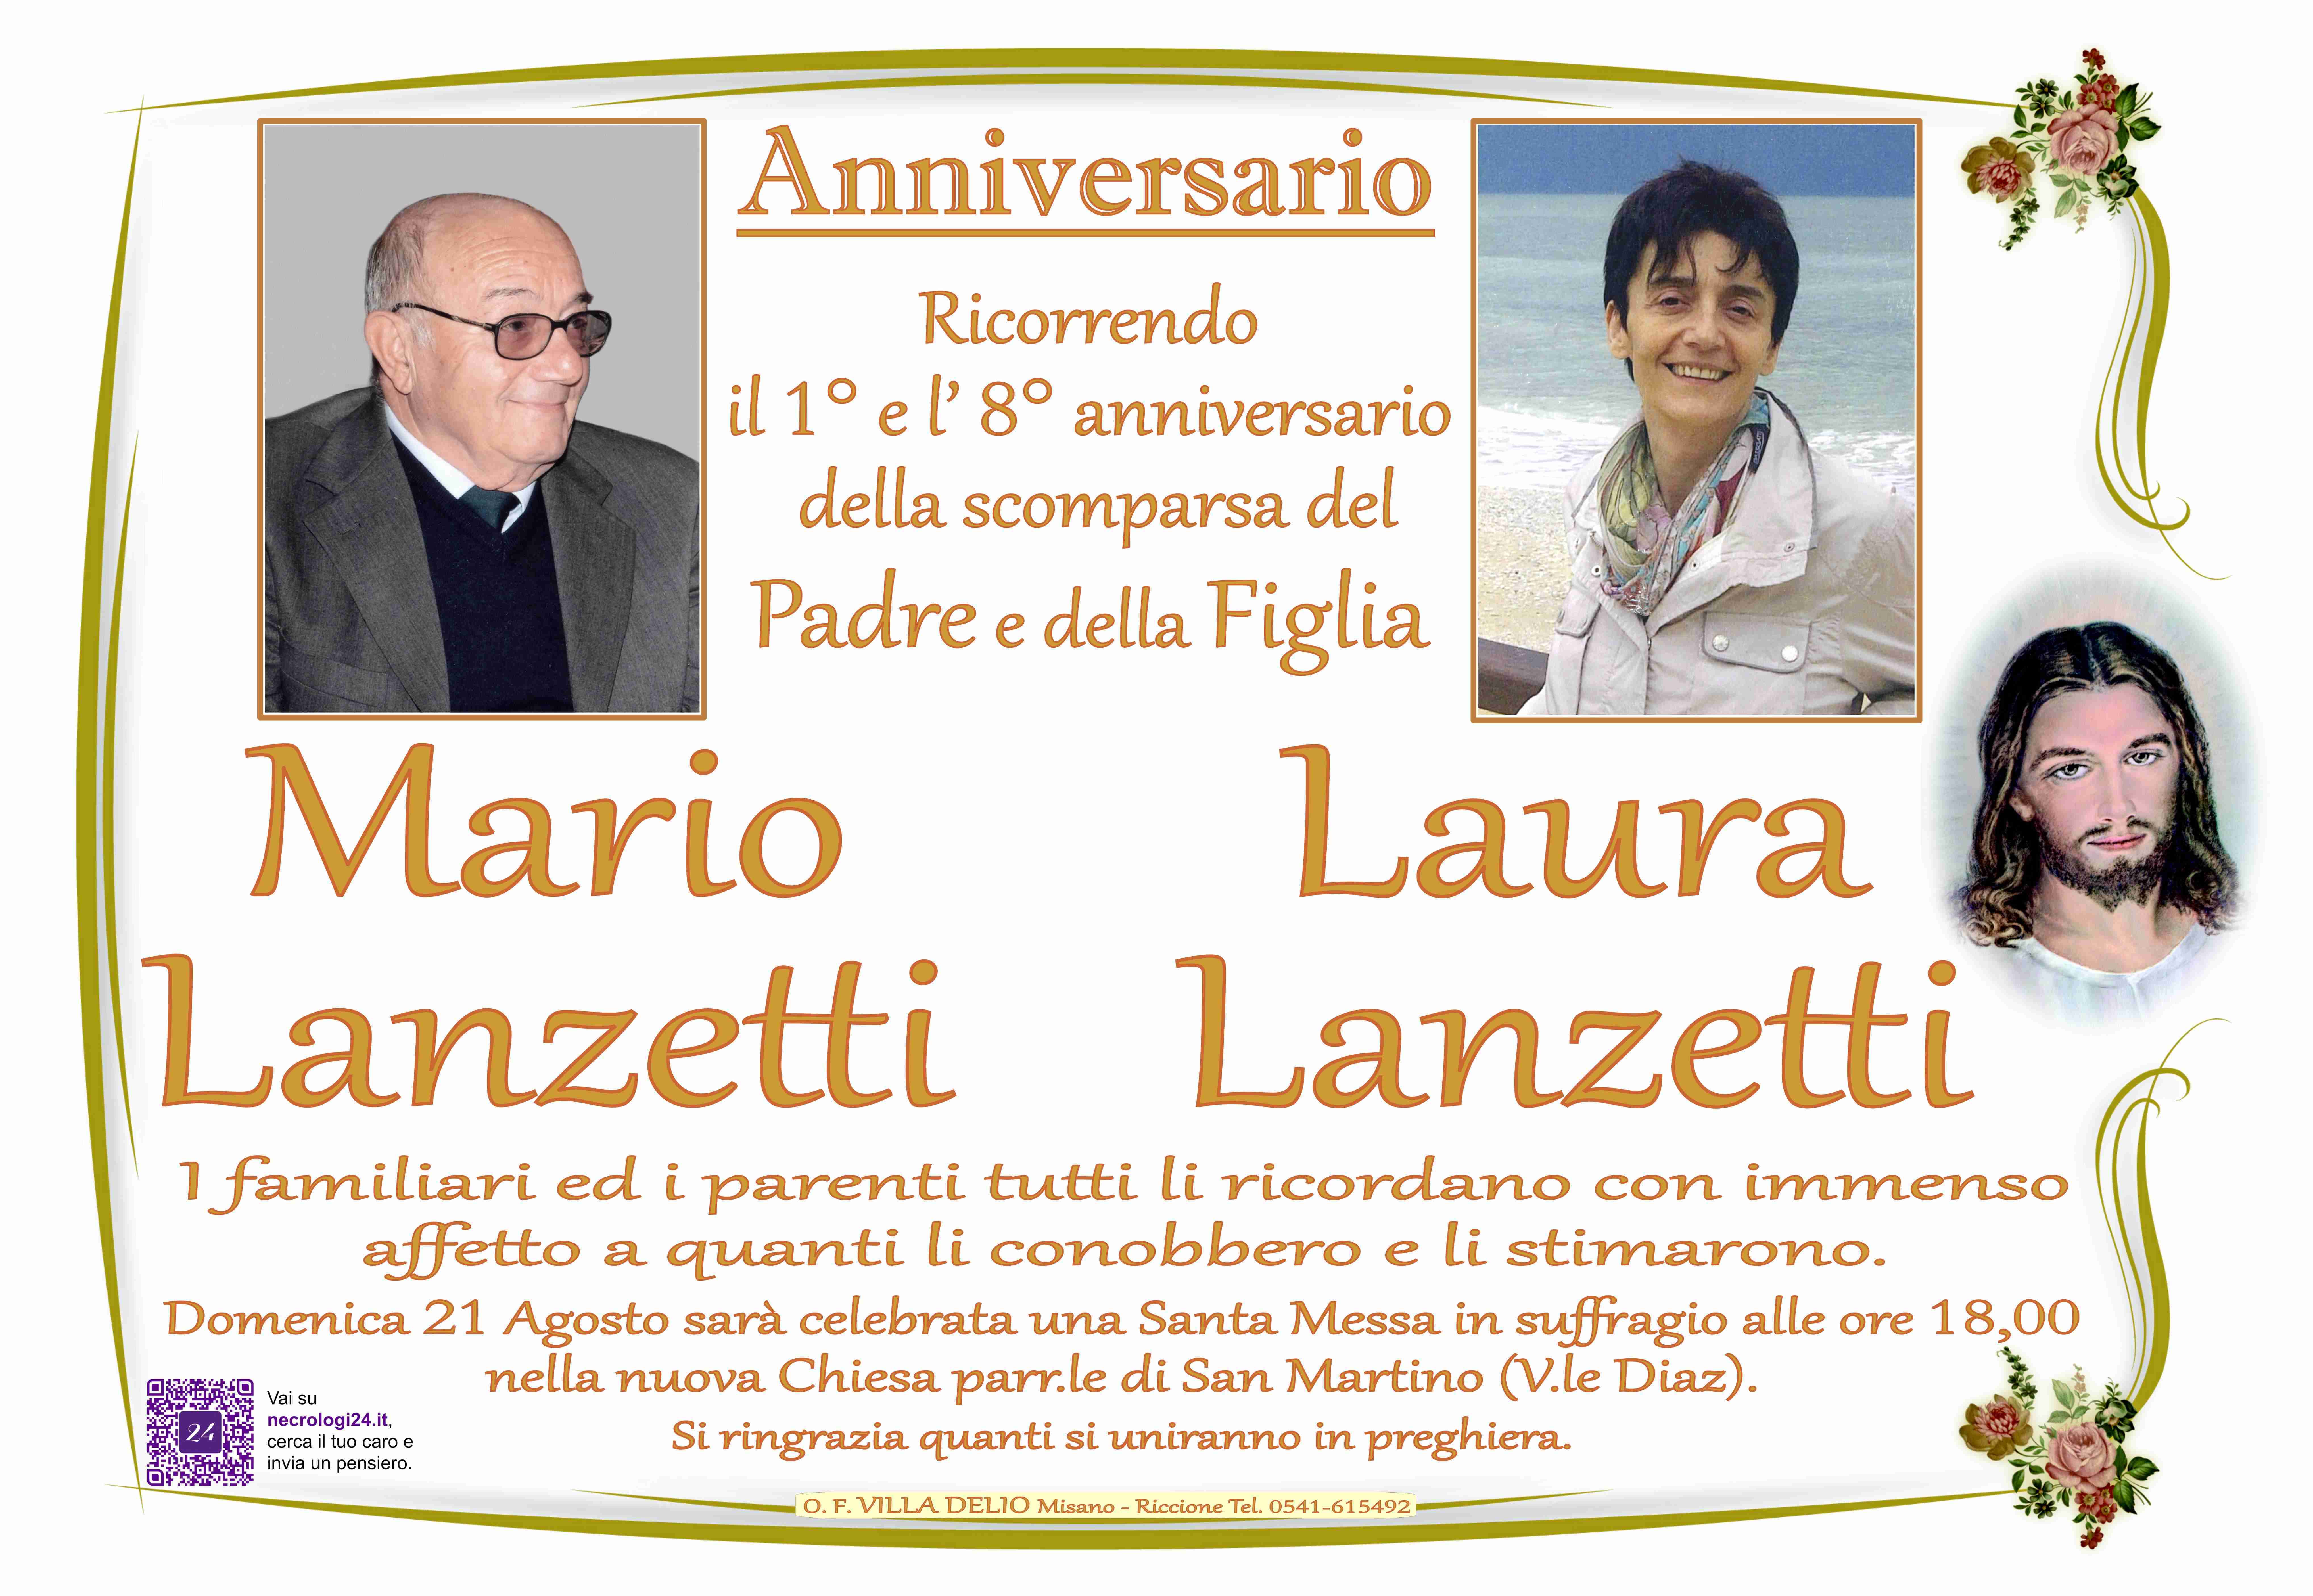 Mario Lanzetti e Laura Lanzetti